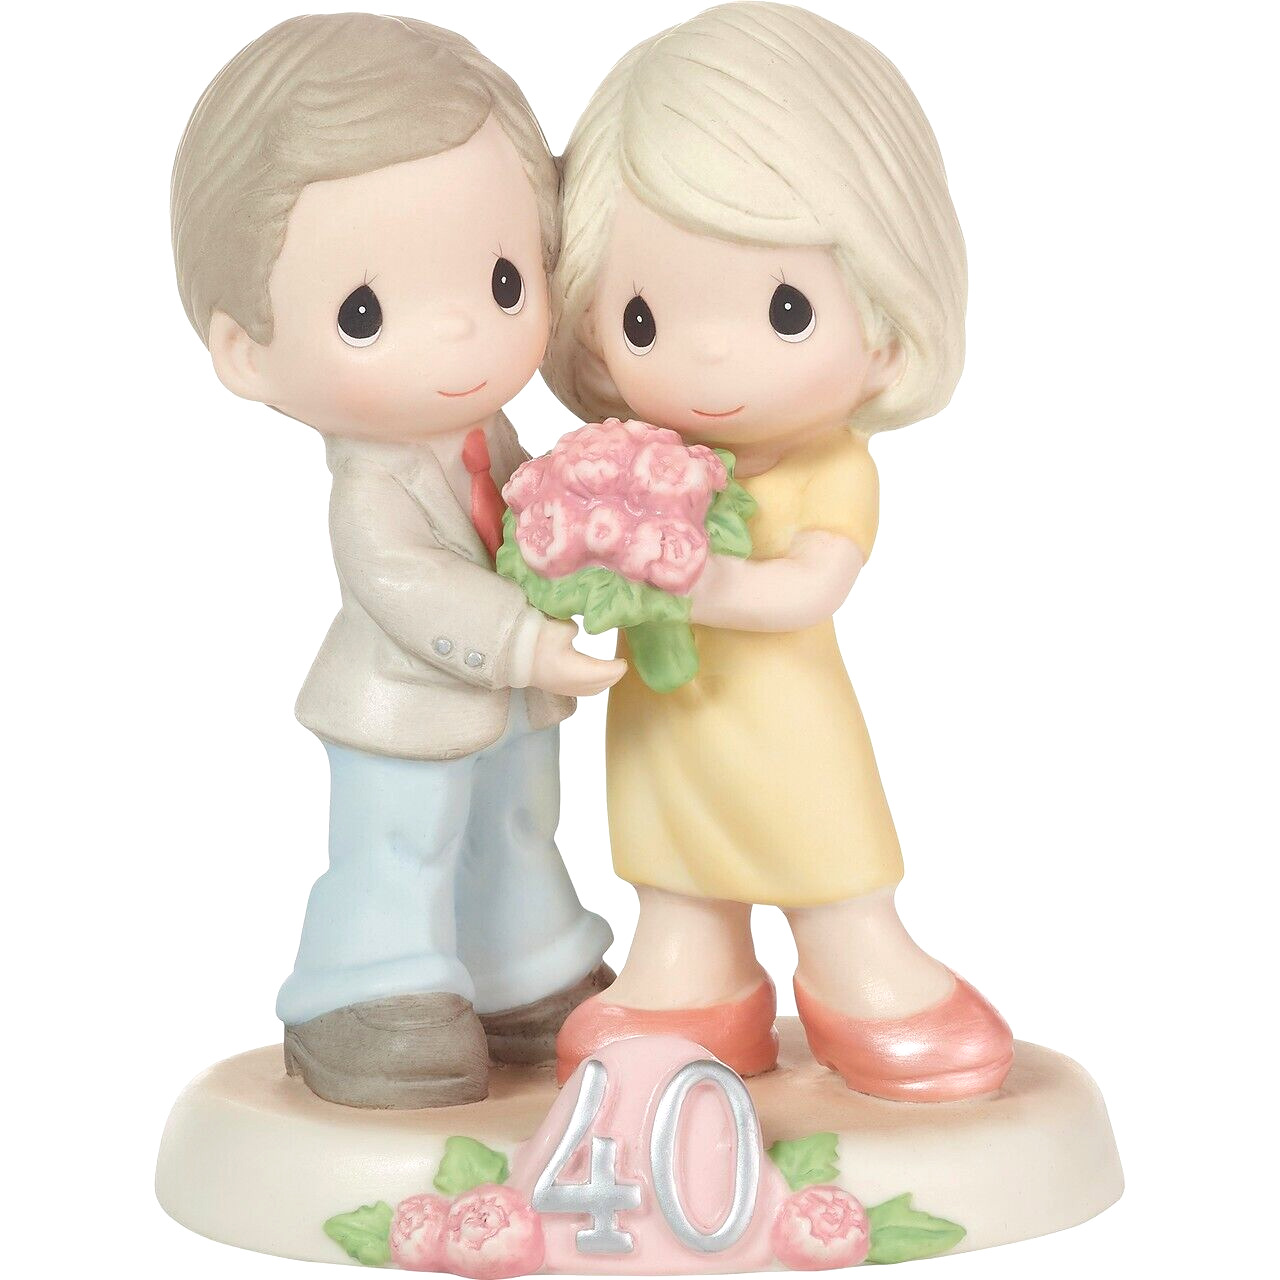 ღ New PRECIOUS MOMENTS Figurine 40TH ANNIVERSARY Forty Loving Years Together